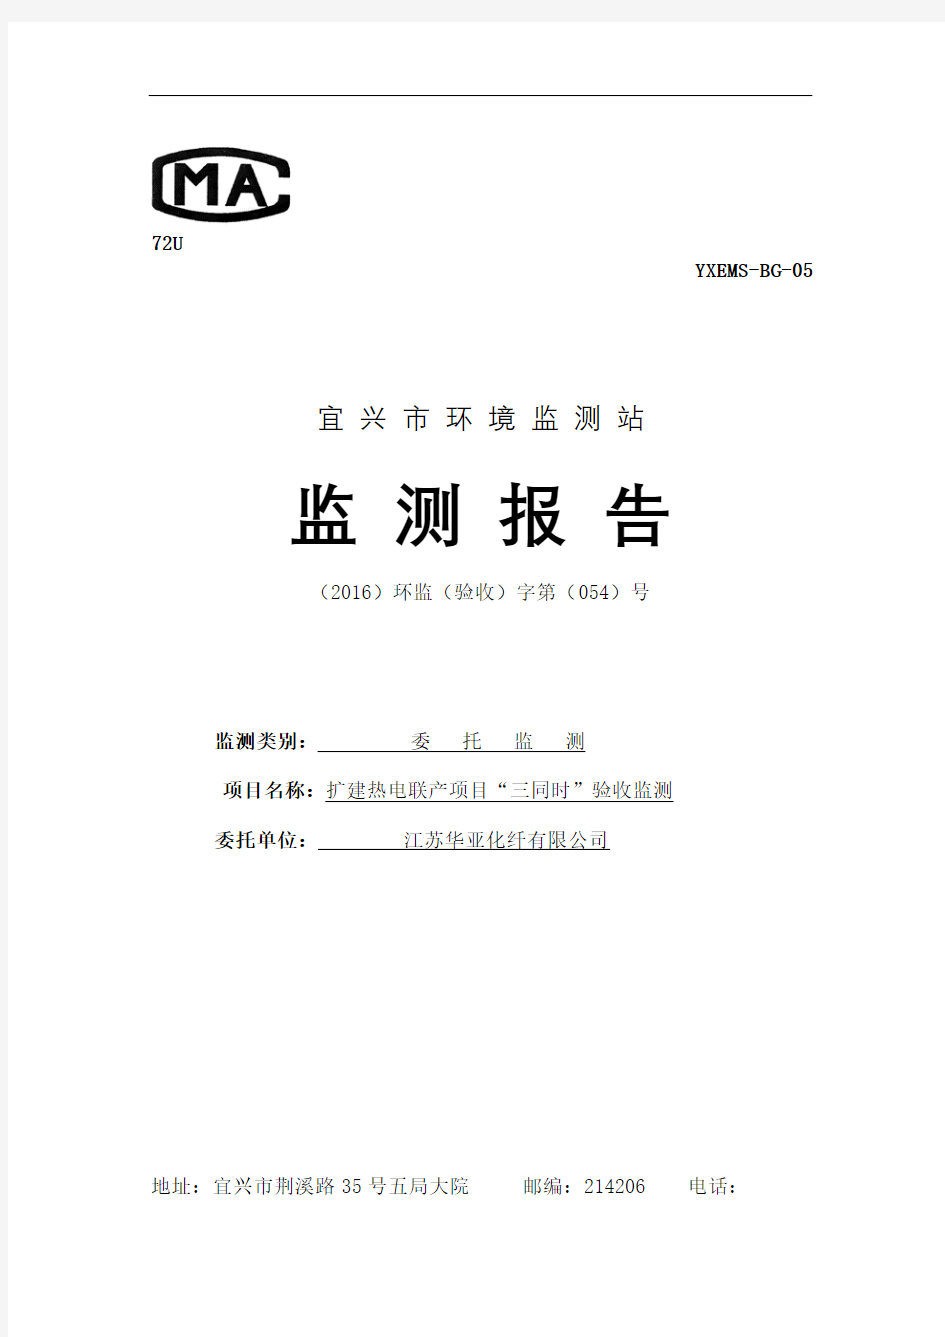 江苏华亚化纤公司扩建热电联产项目验收监测报告